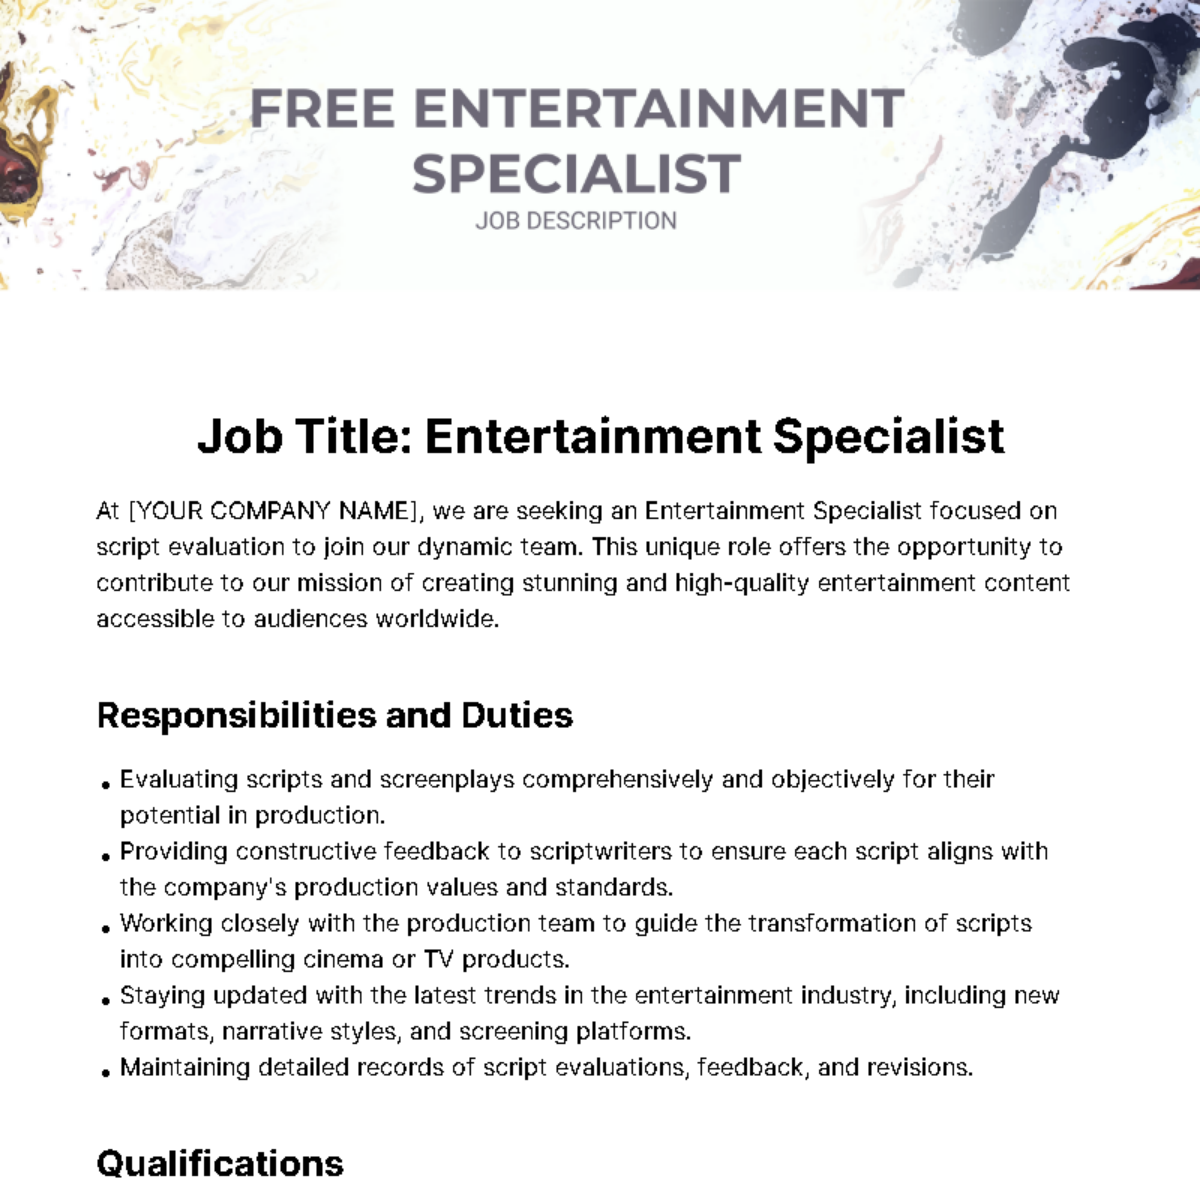 Free Entertainment Specialist Job Description Template